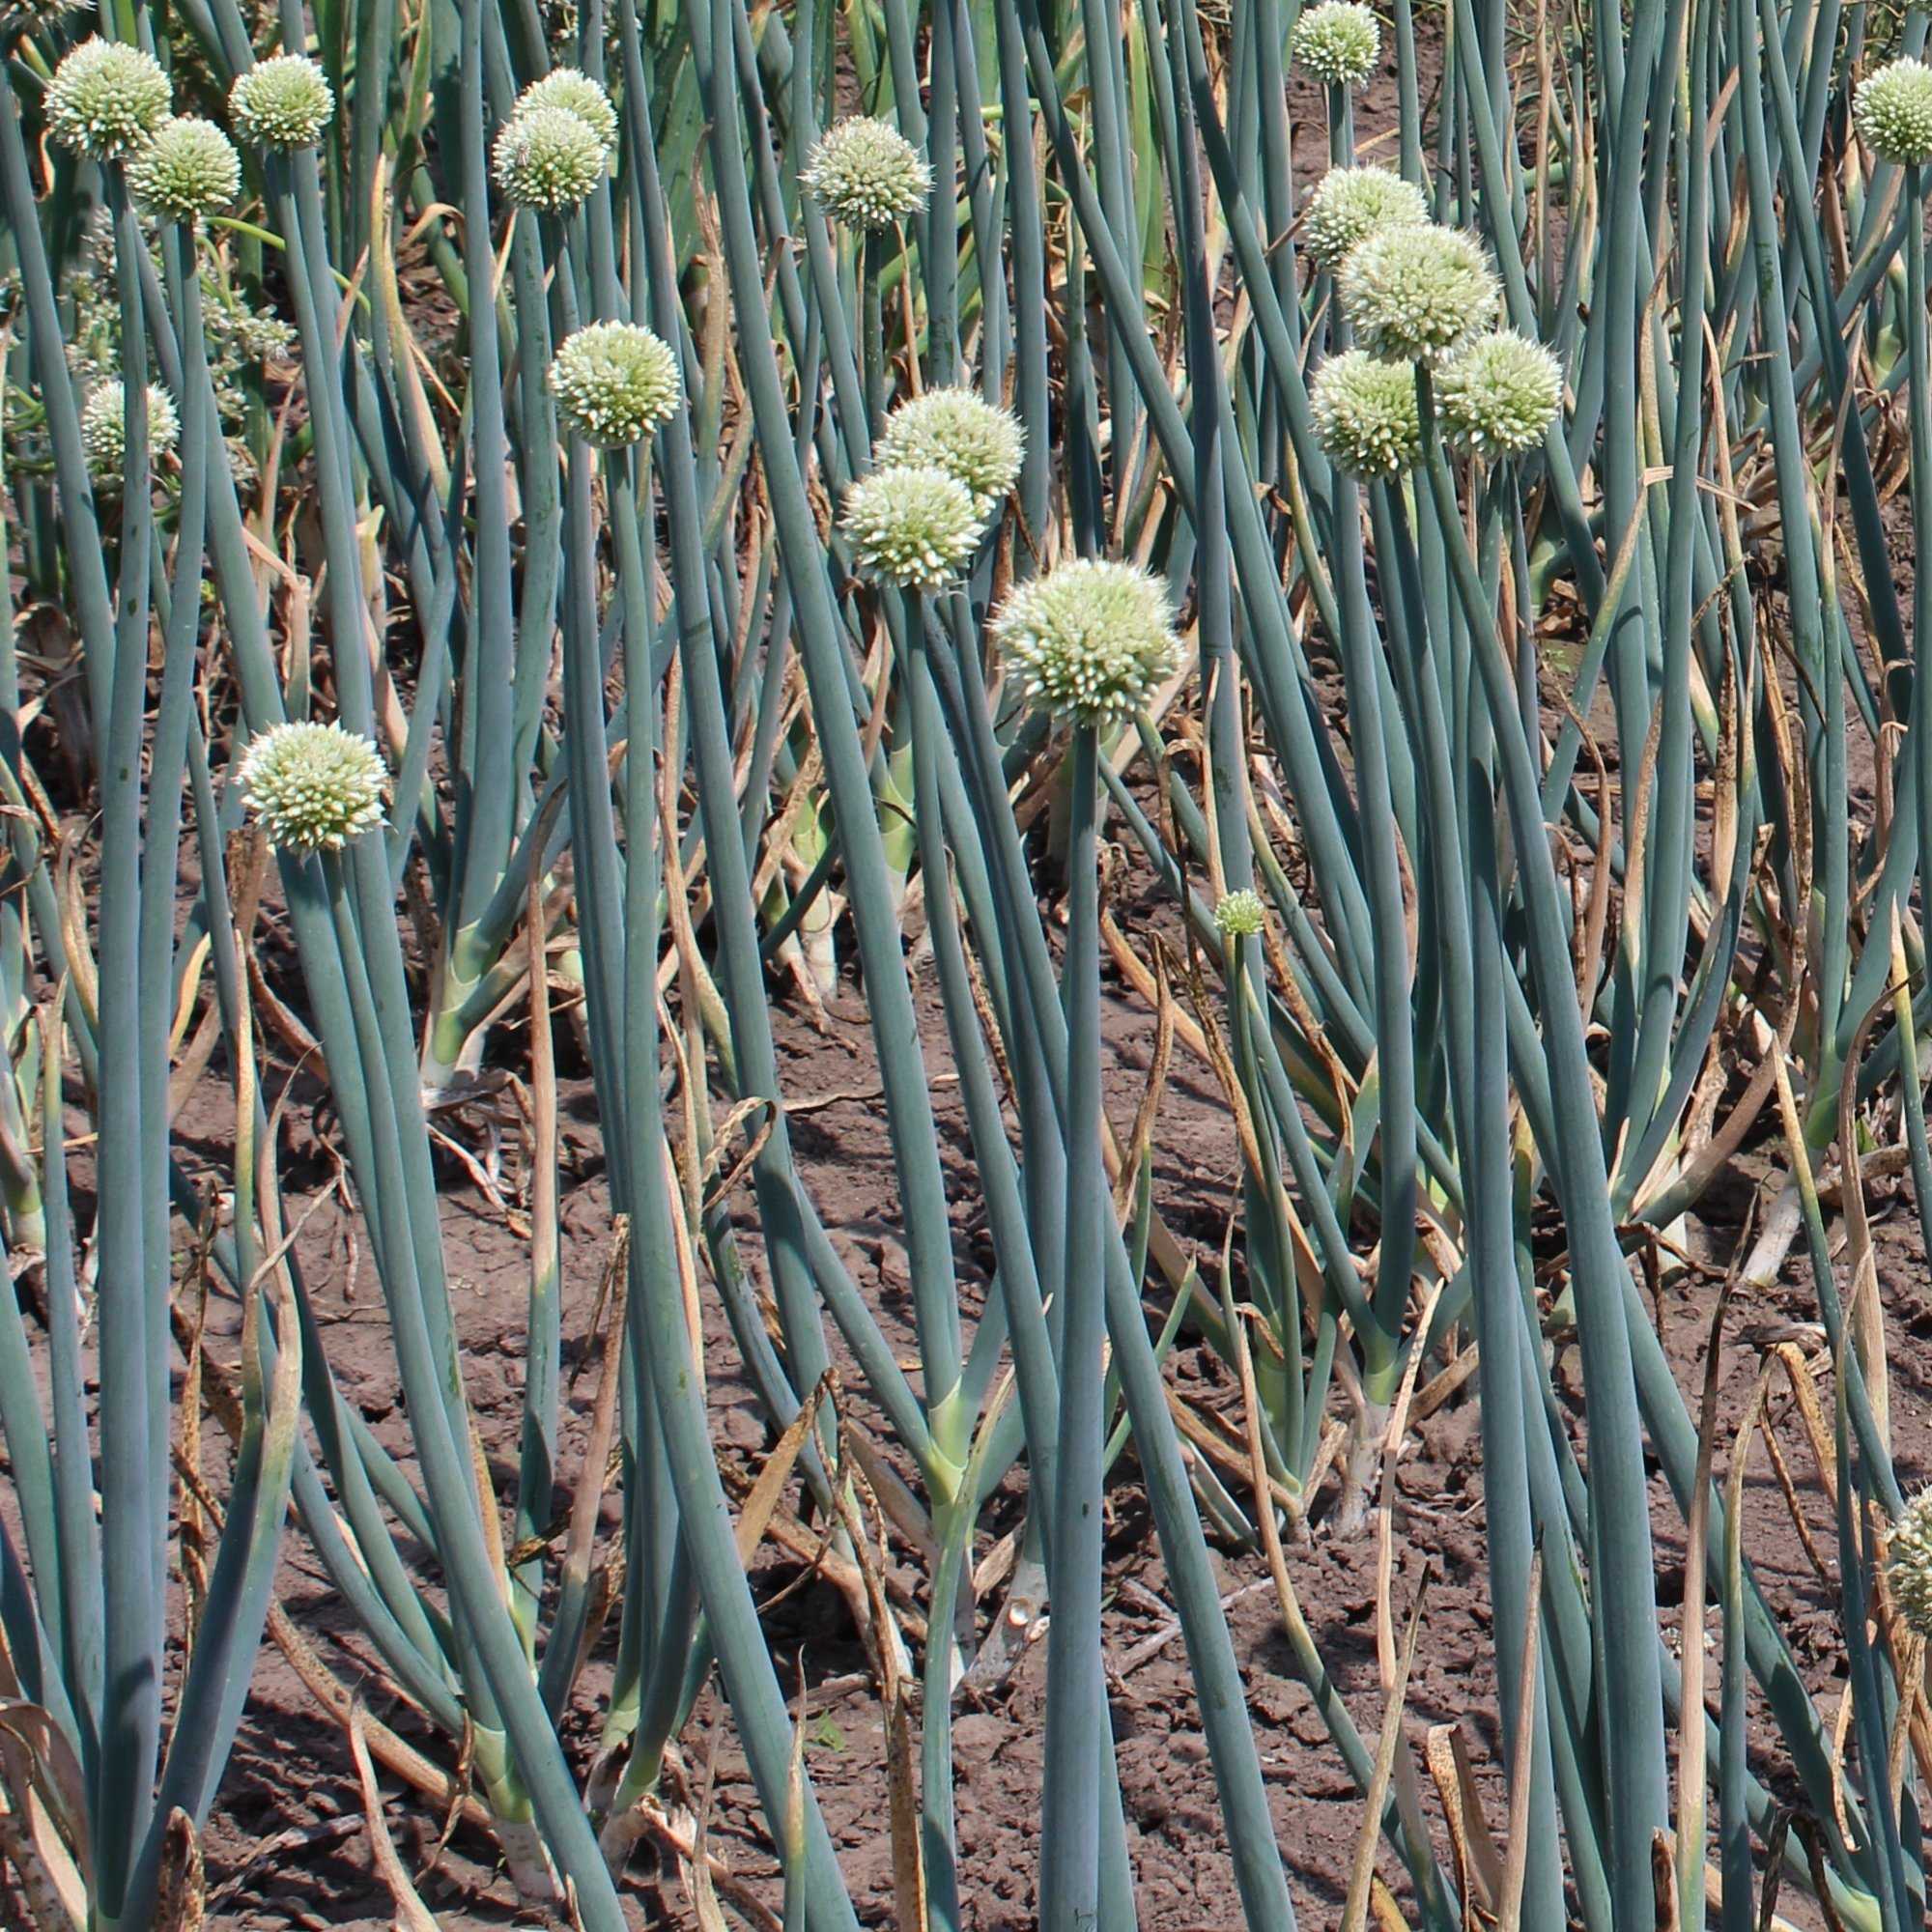 Лук батун - Allium fistulosum